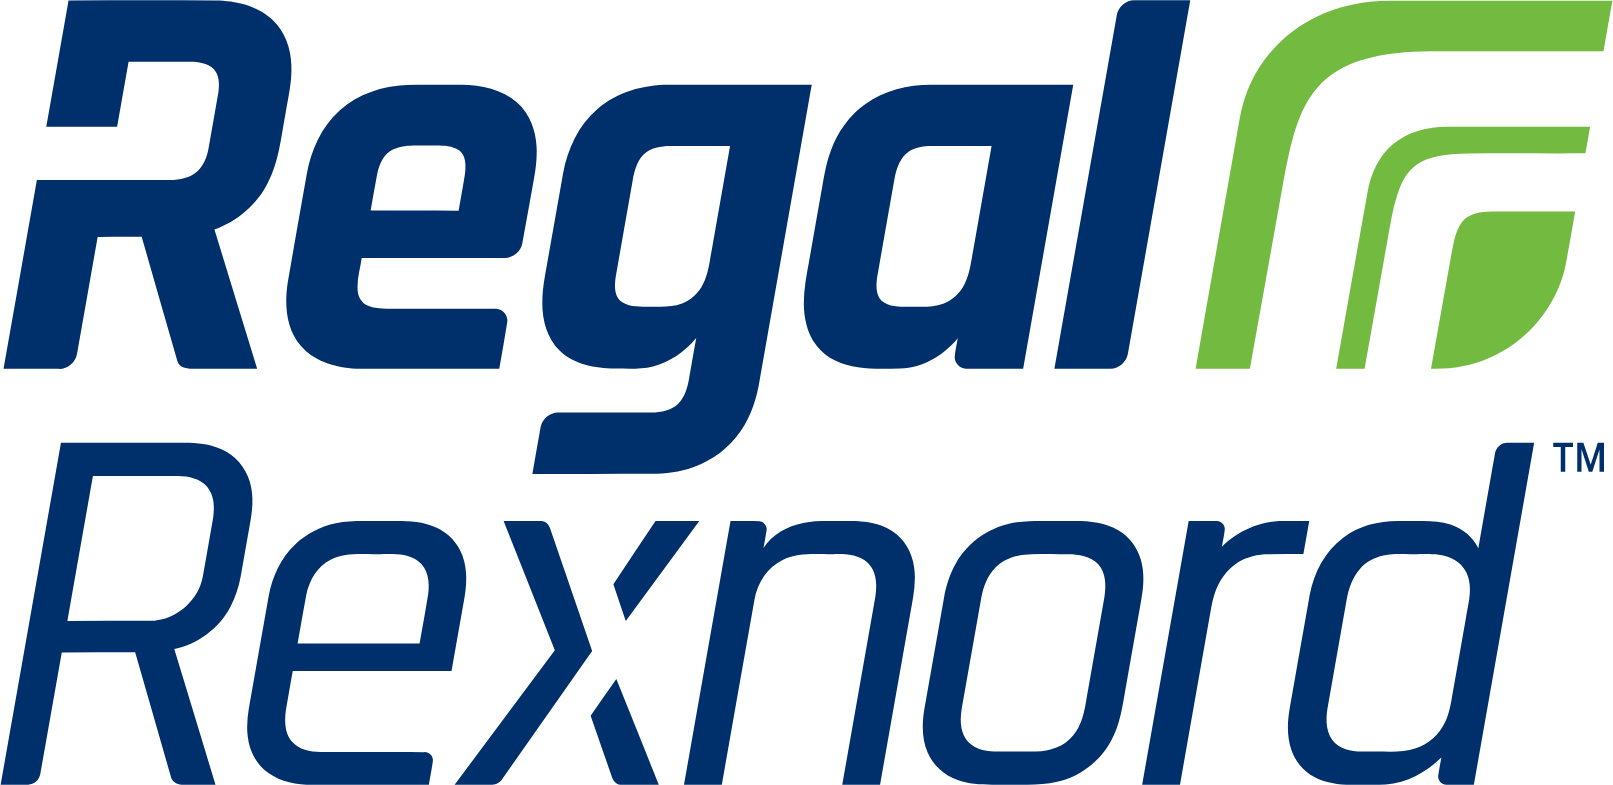 Logo de Regal Rexnord aux formats PNG transparent et SVG vectorisé